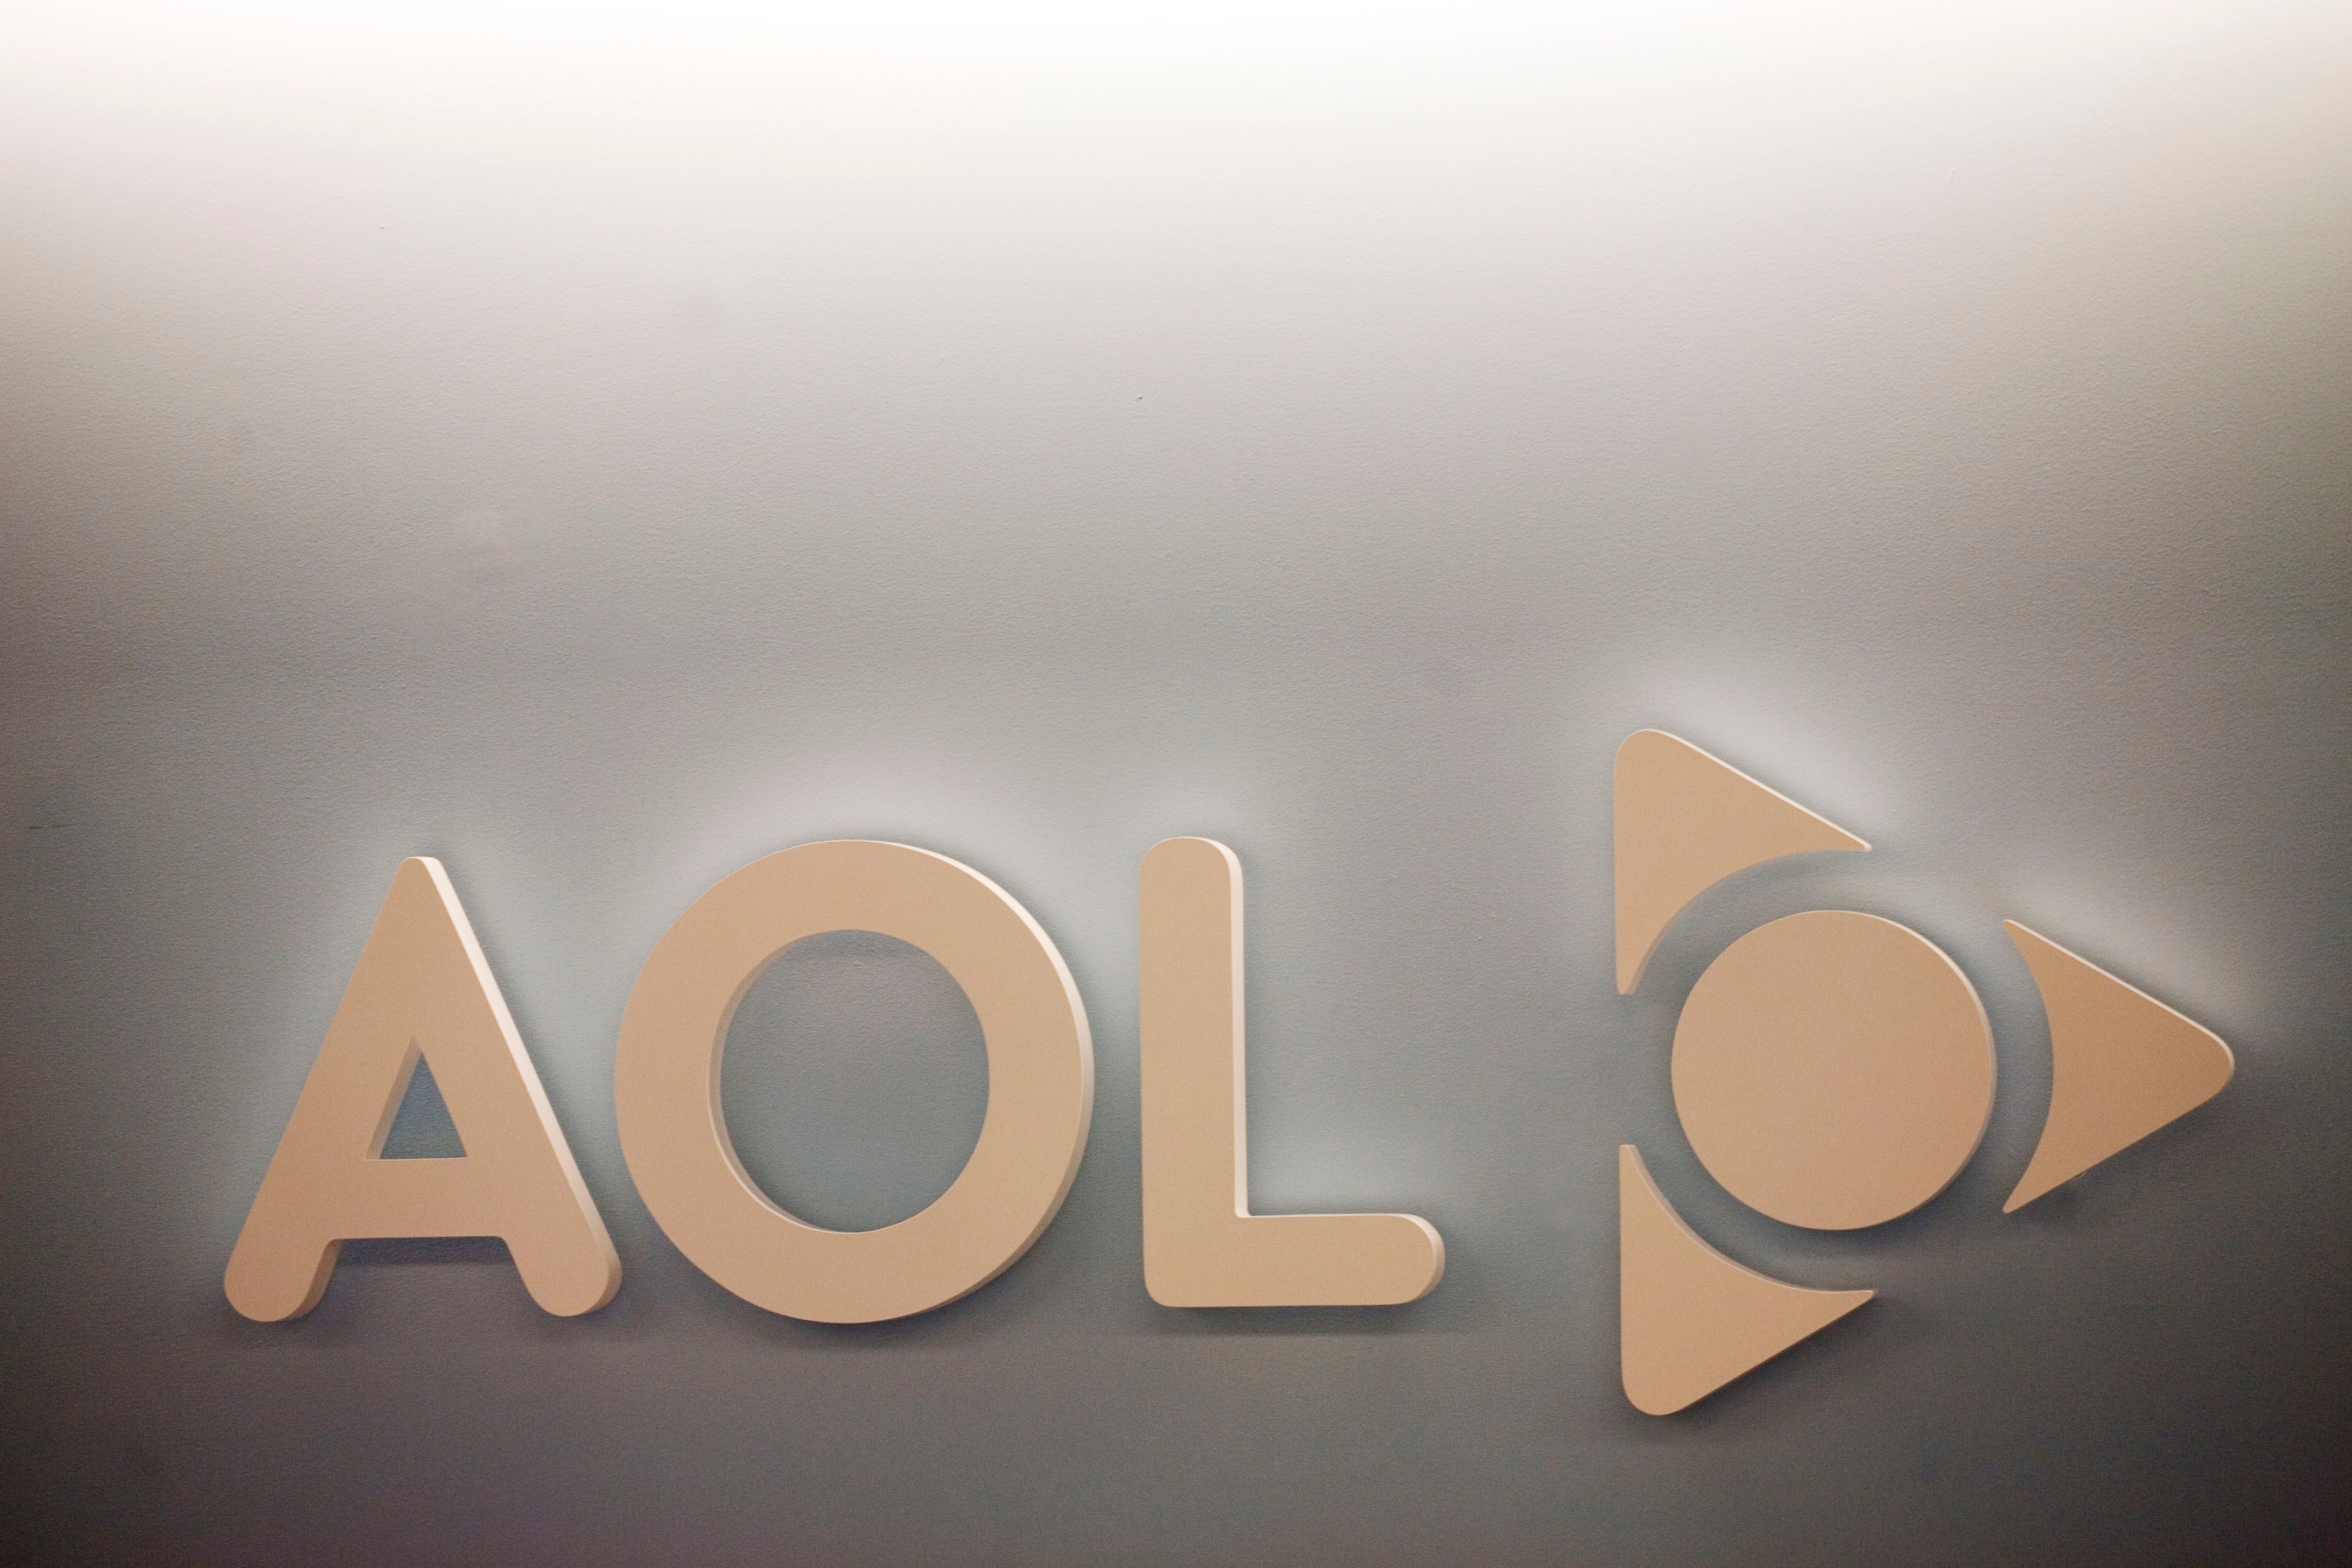 EEUU-AOL-YAHOO